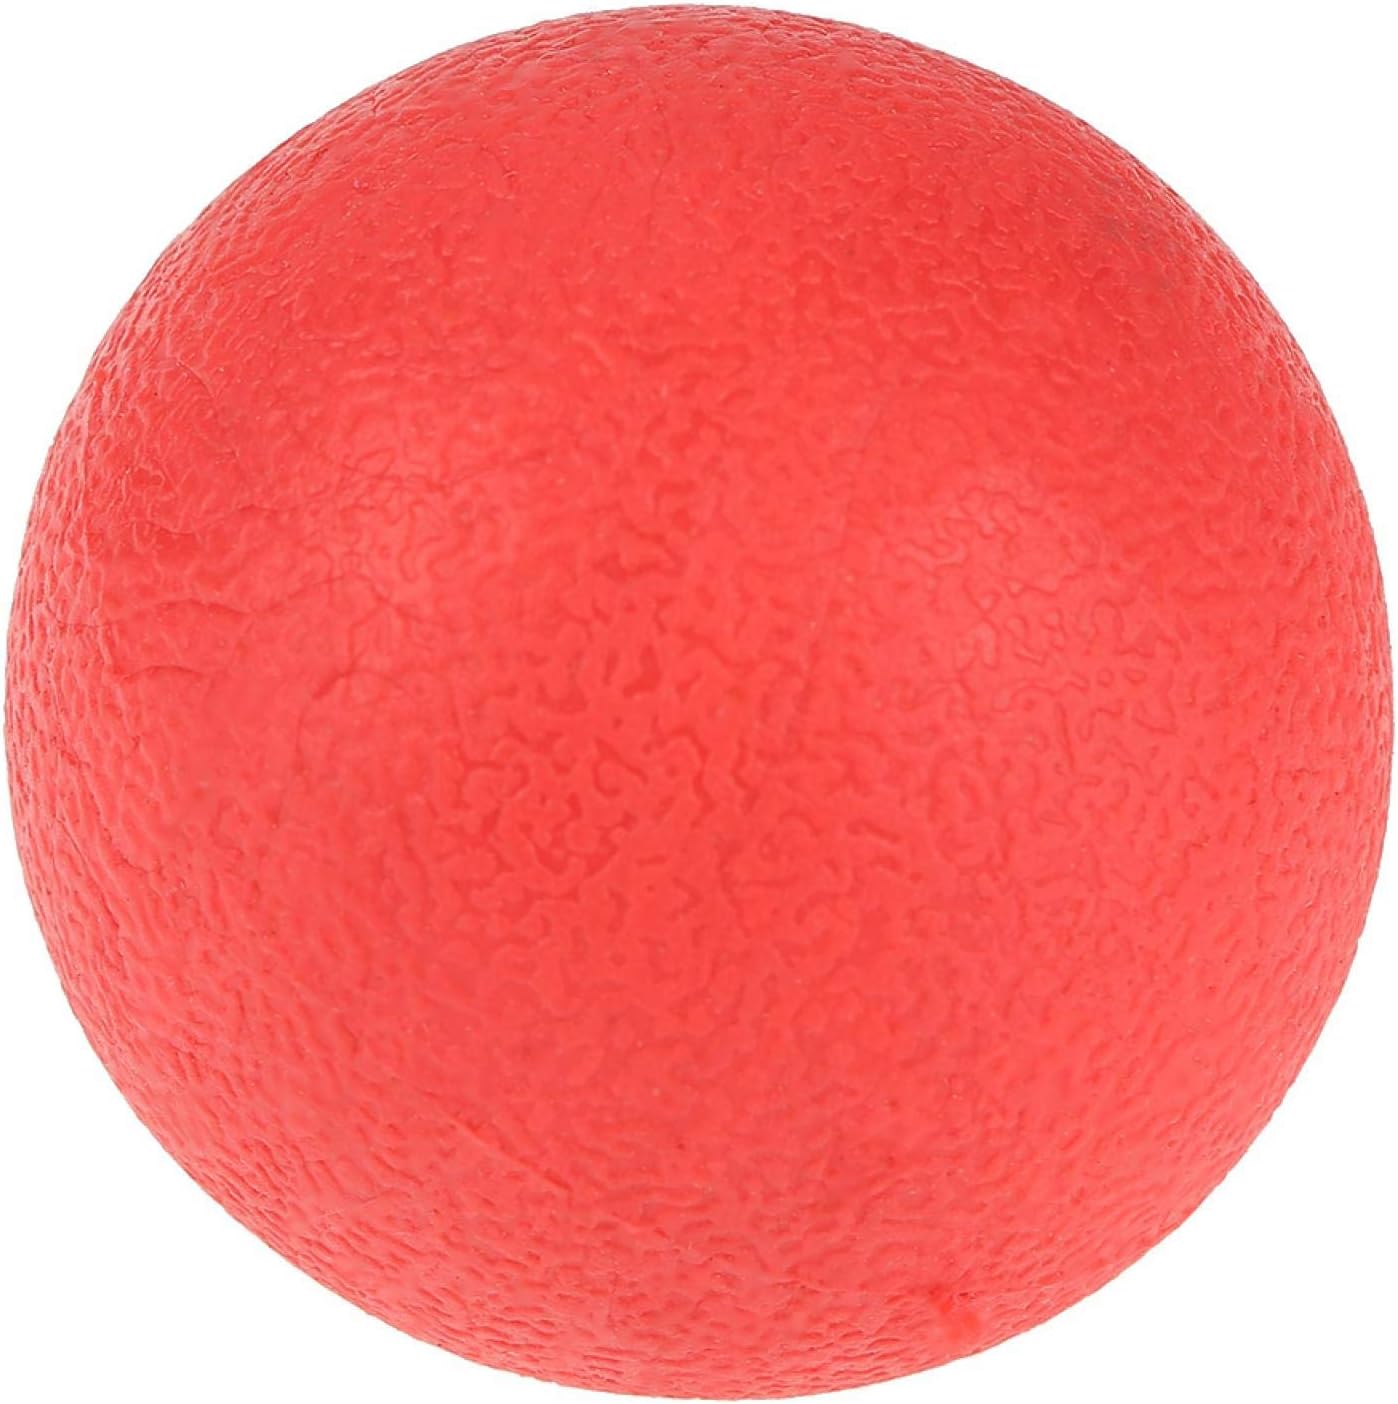 Rubz Rubber Ball Small - Dia 5cm